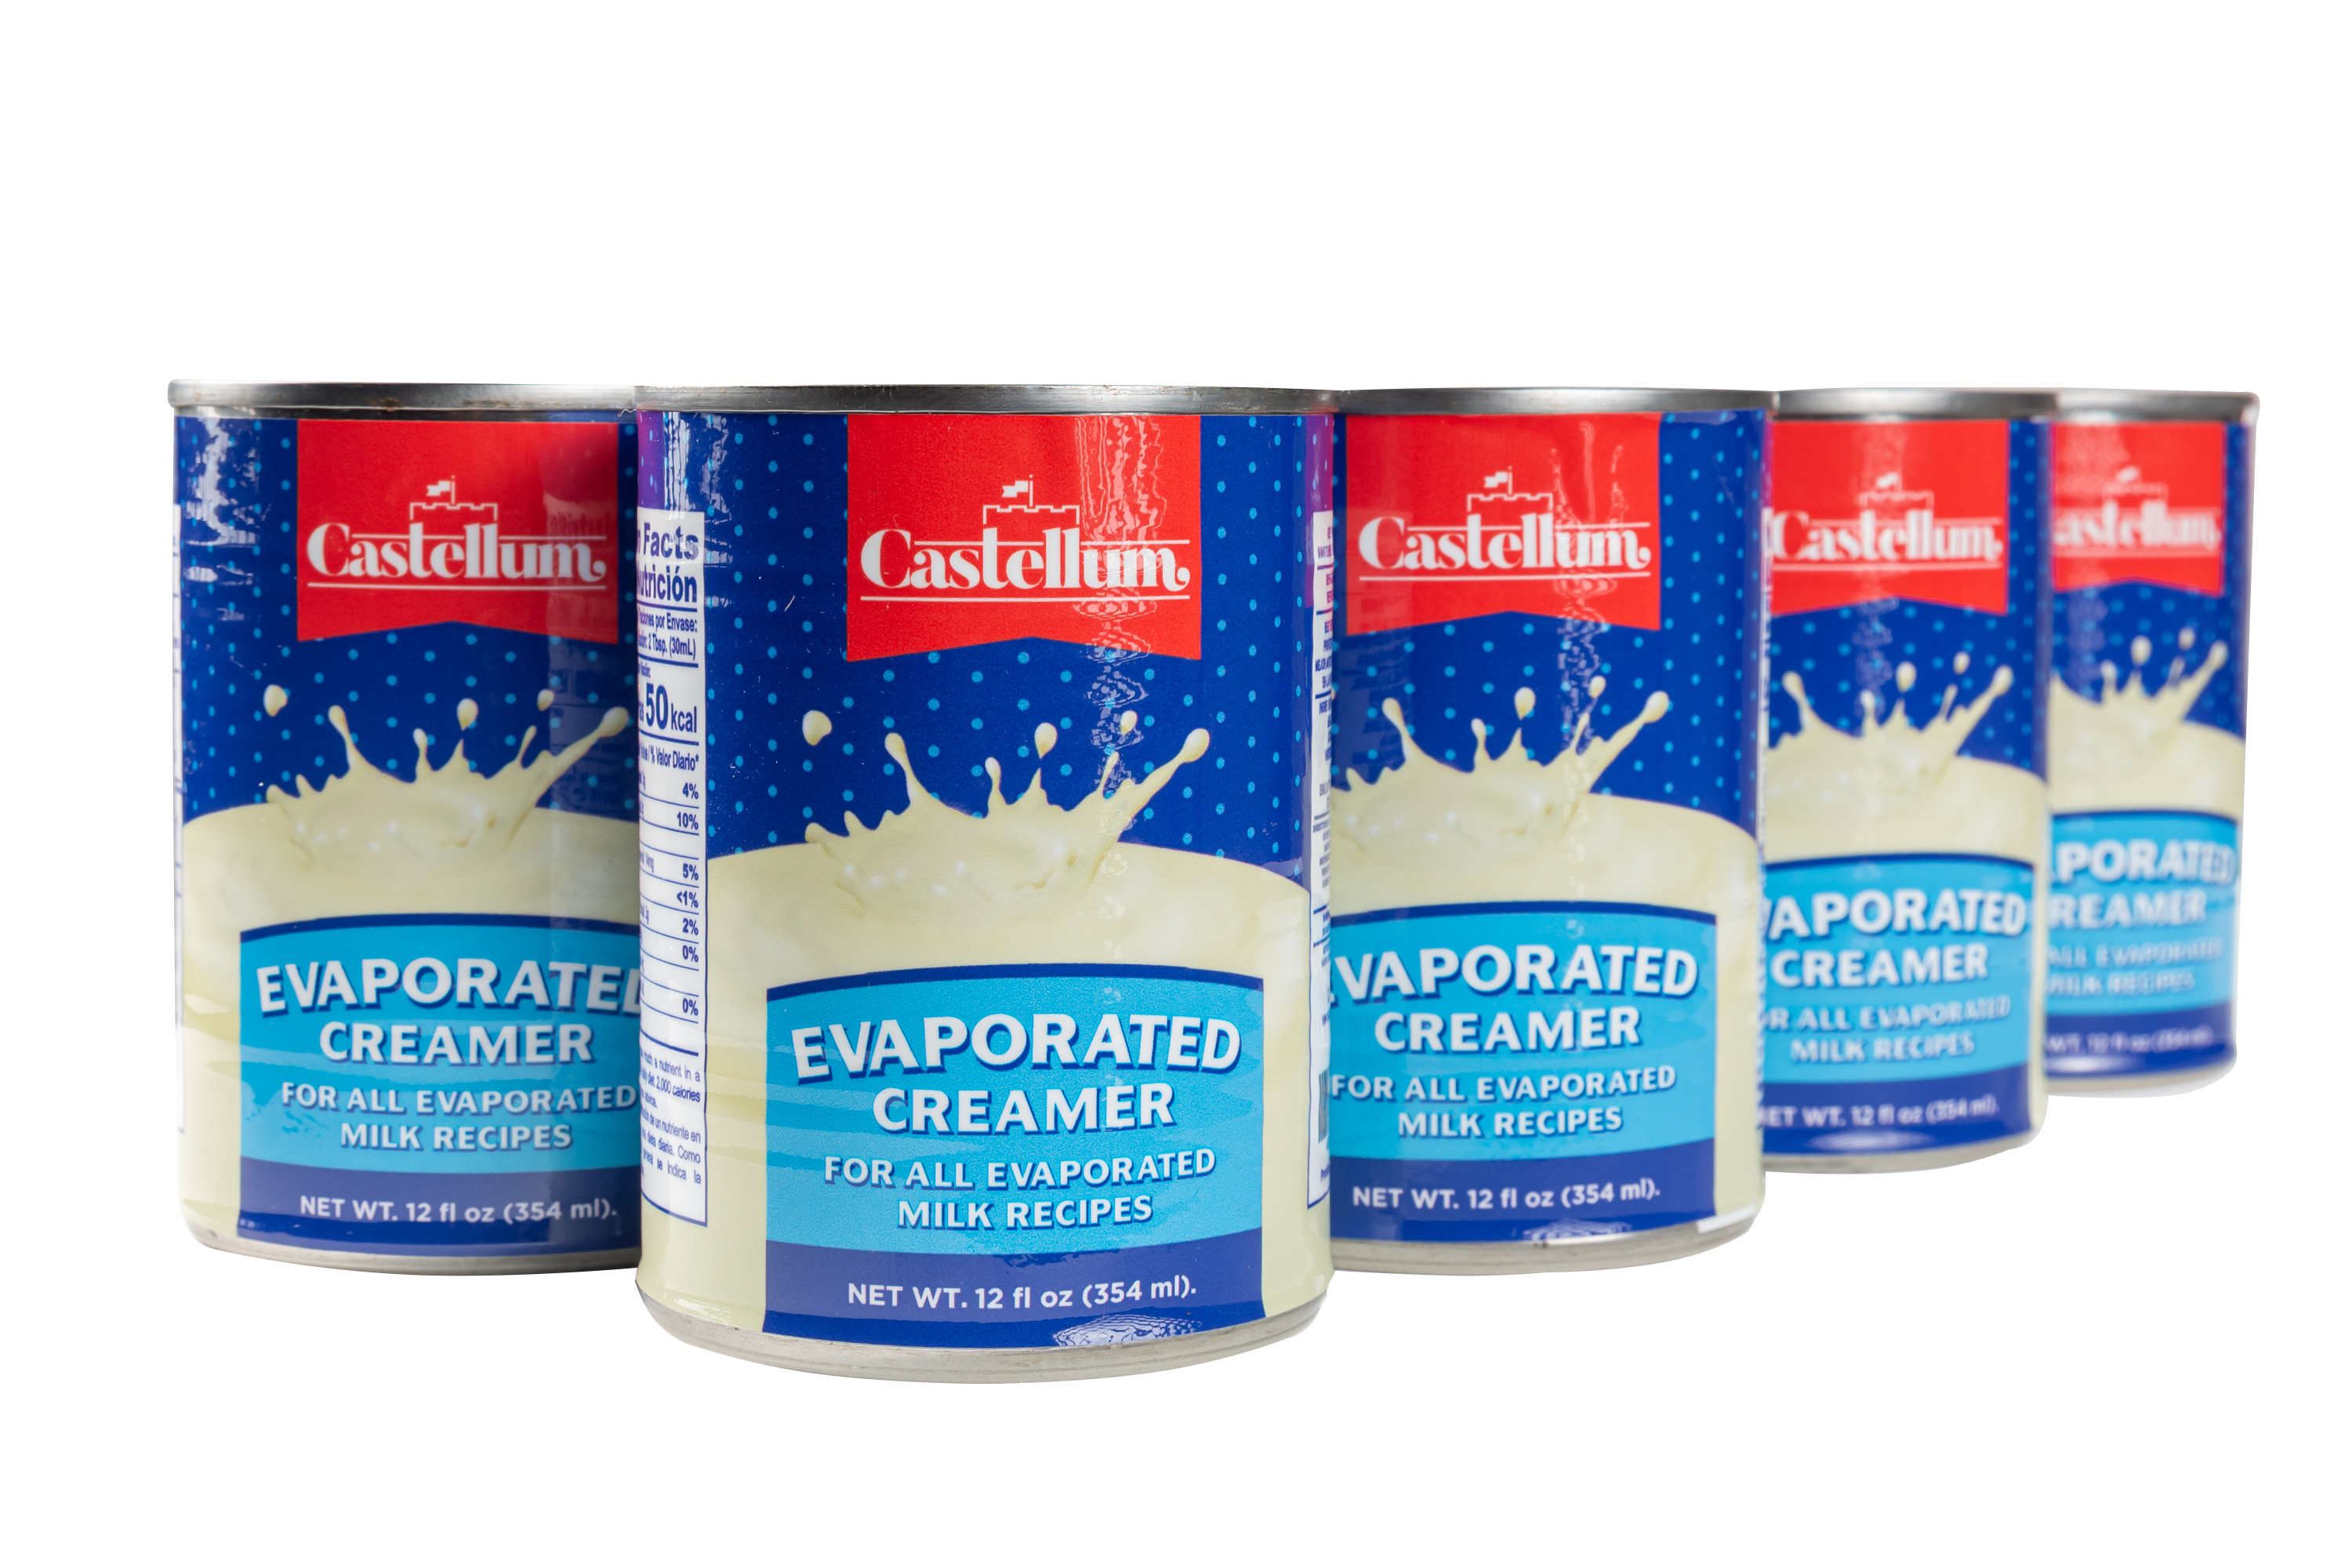 Castellum Evaporated Creamer